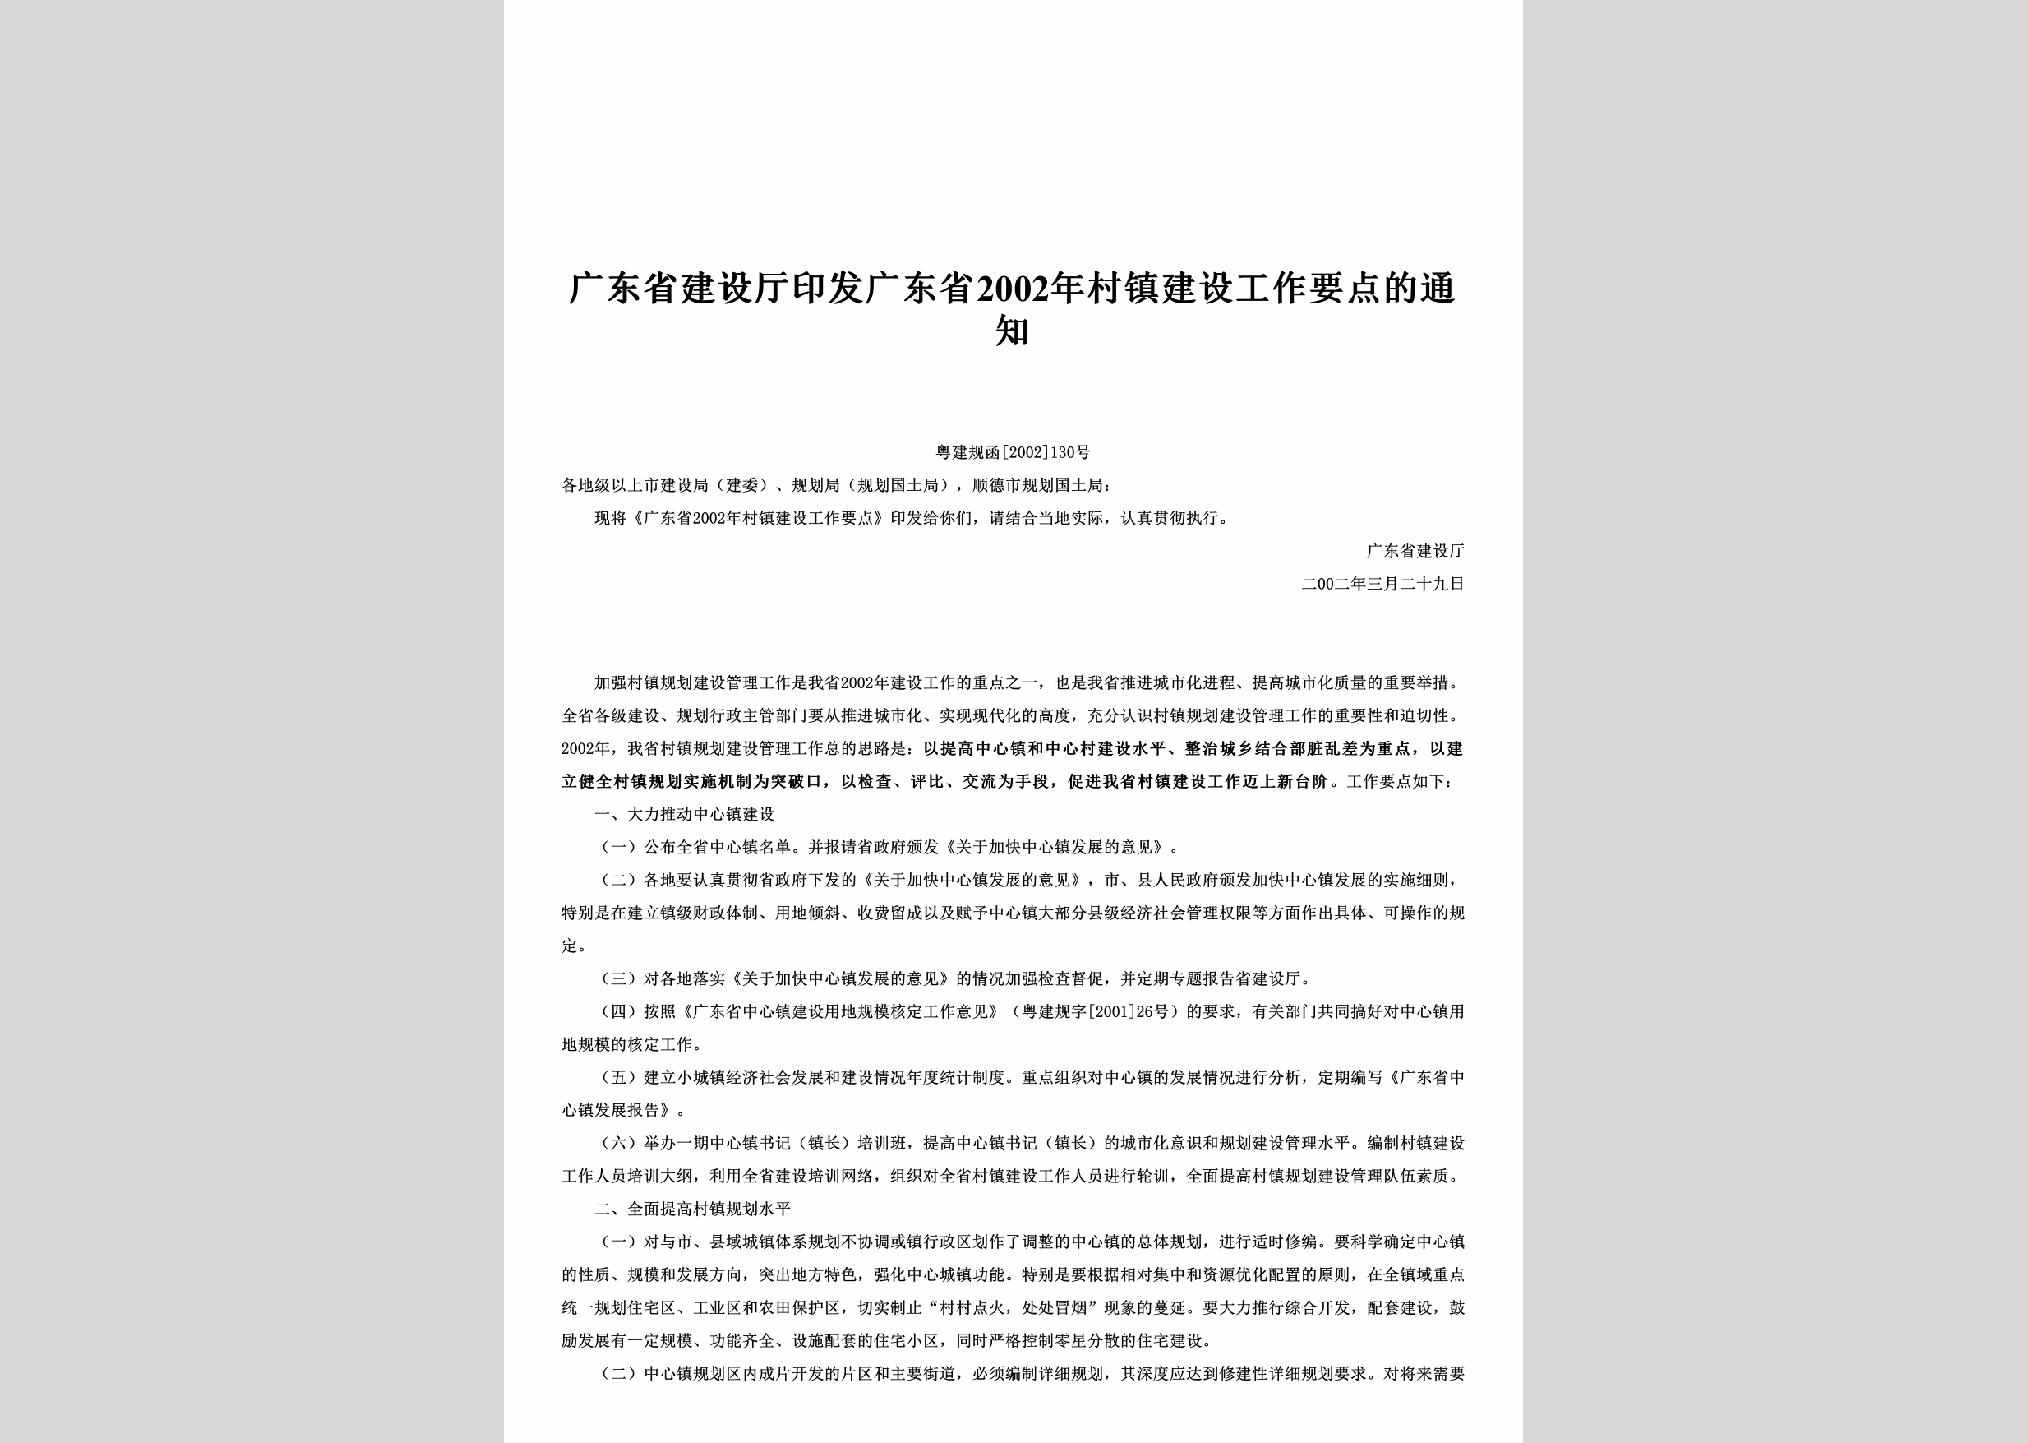 粤建规函[2002]130号：印发广东省2002年村镇建设工作要点的通知